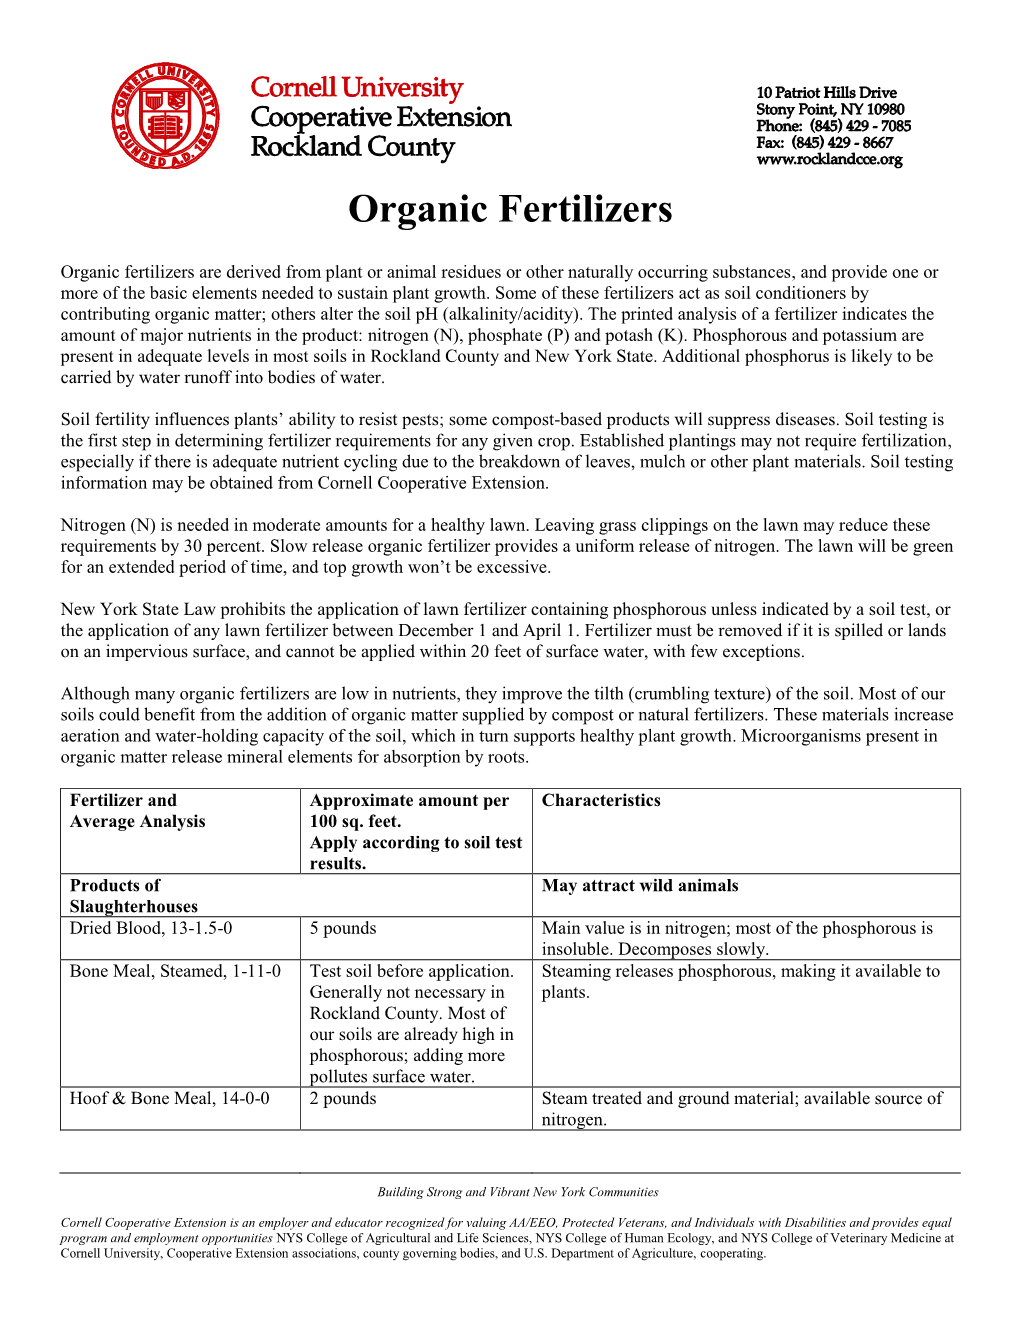 Natural & Organic Fertilizer